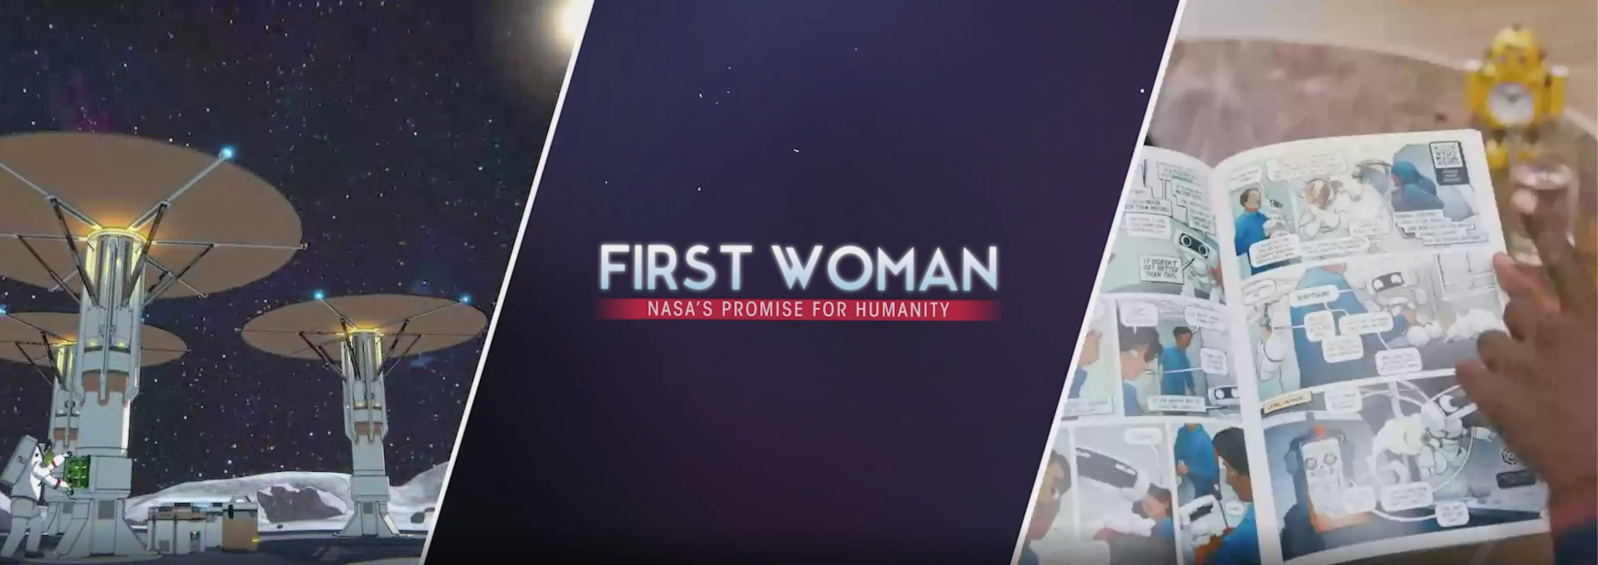 NASA First Woman